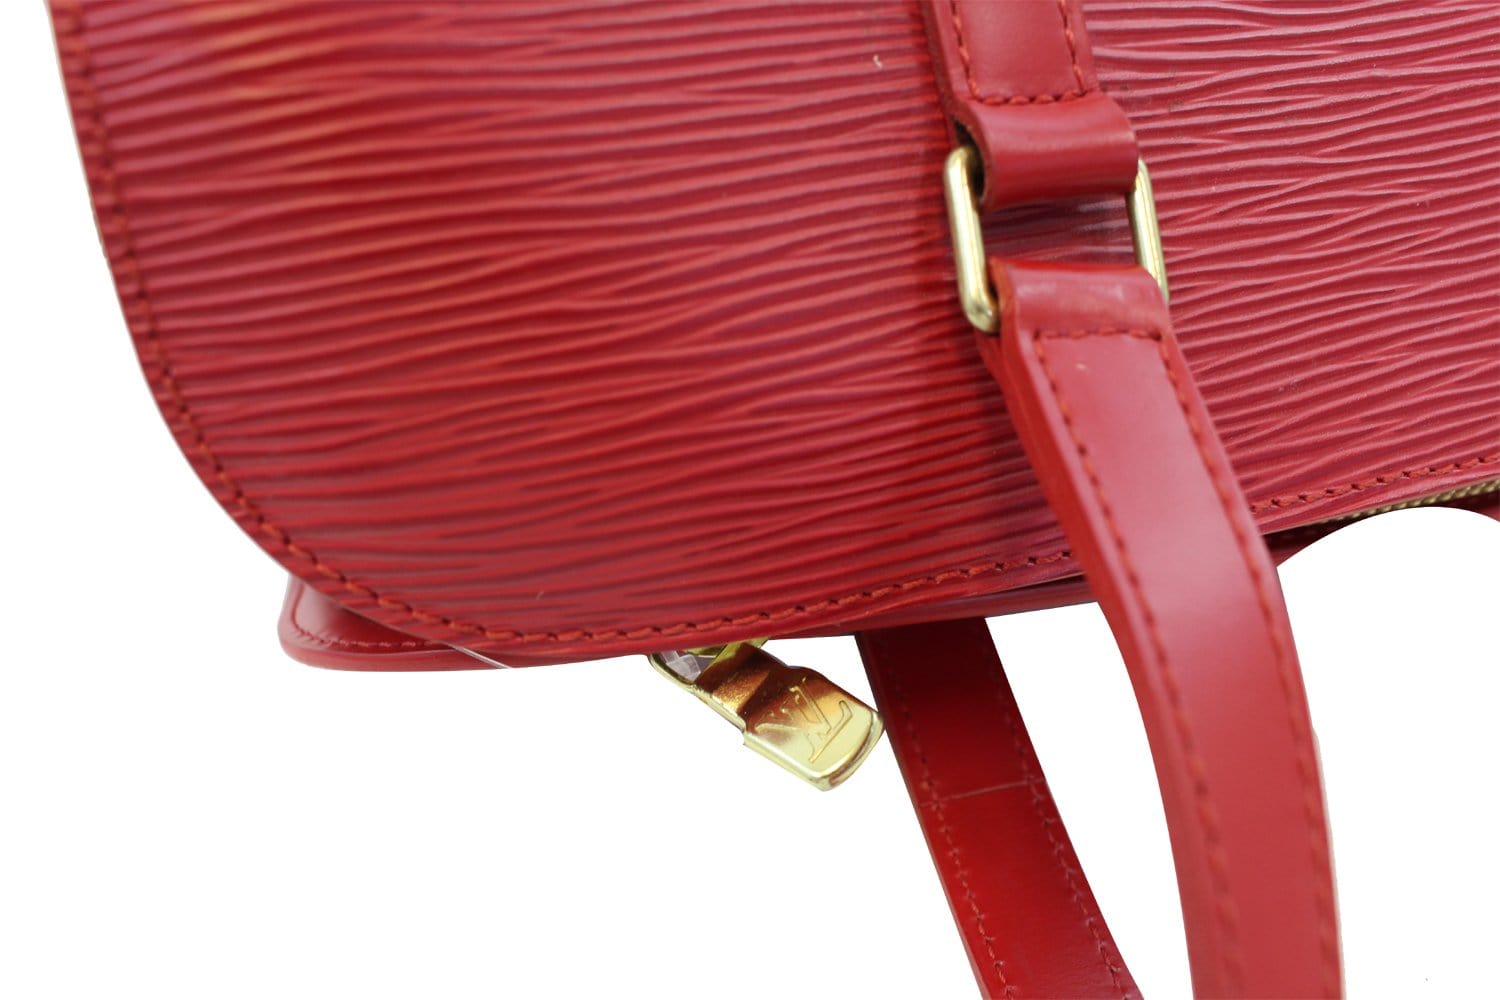 Louis Vuitton Red Epi Leather Soufflot Papillon Bag 857663